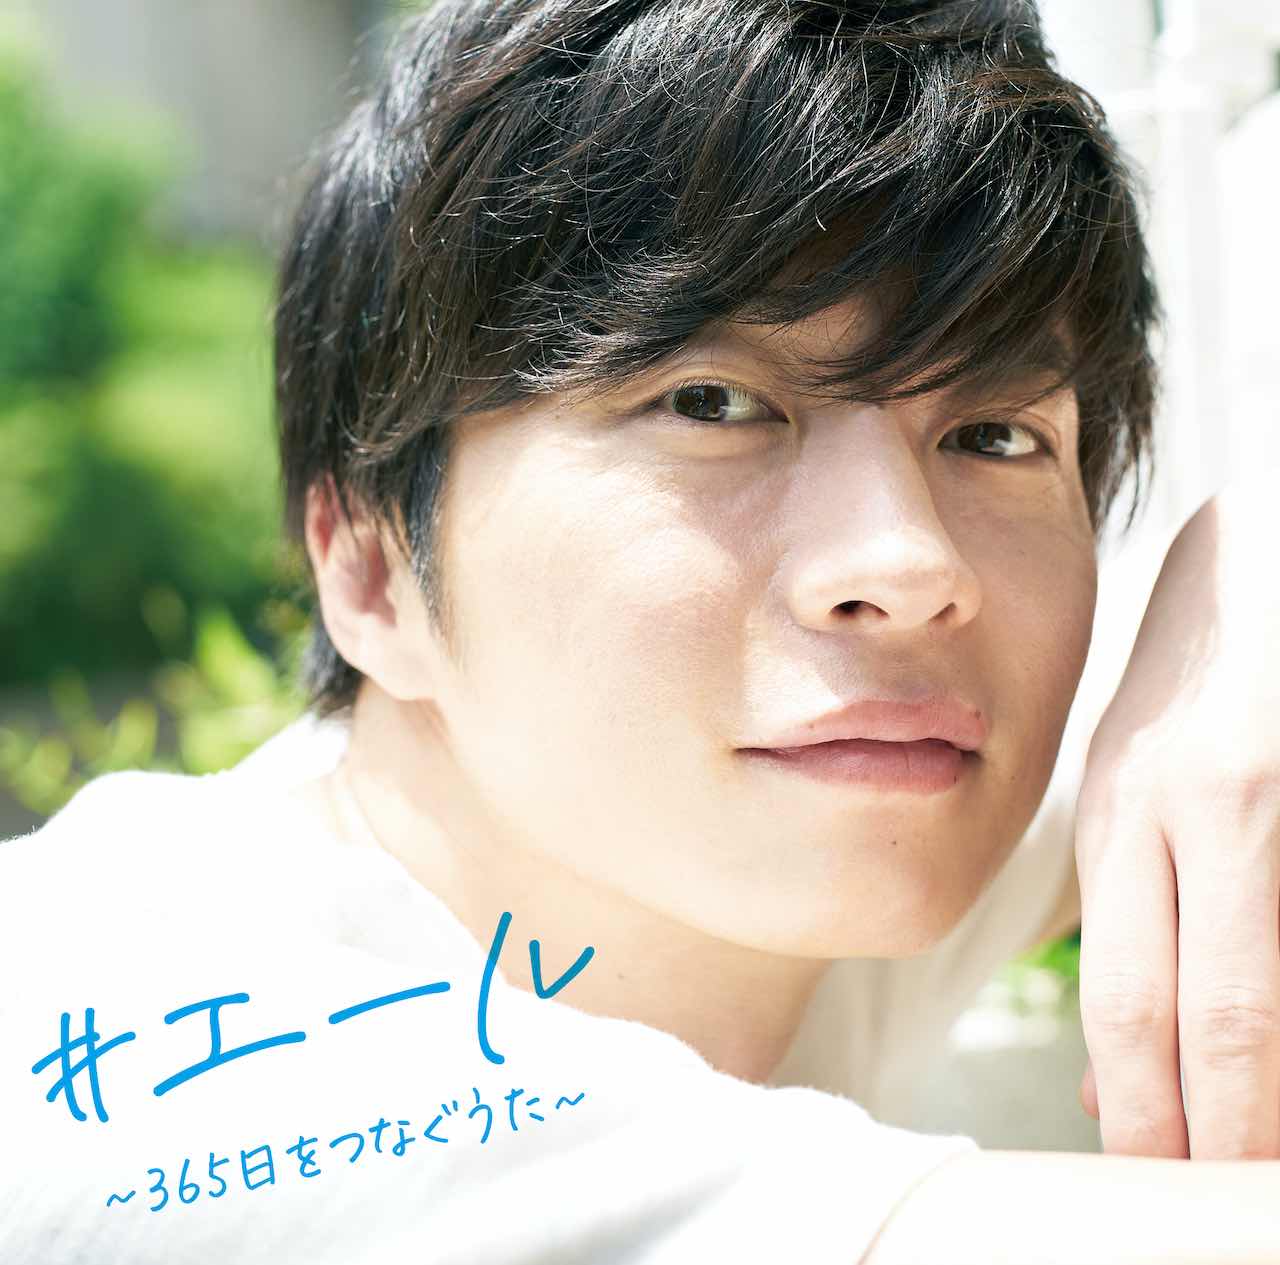 「全国の人に元気を届ける」コンピレーション MIX CD発売決定！ジャケットには俳優「田中圭」を起用！